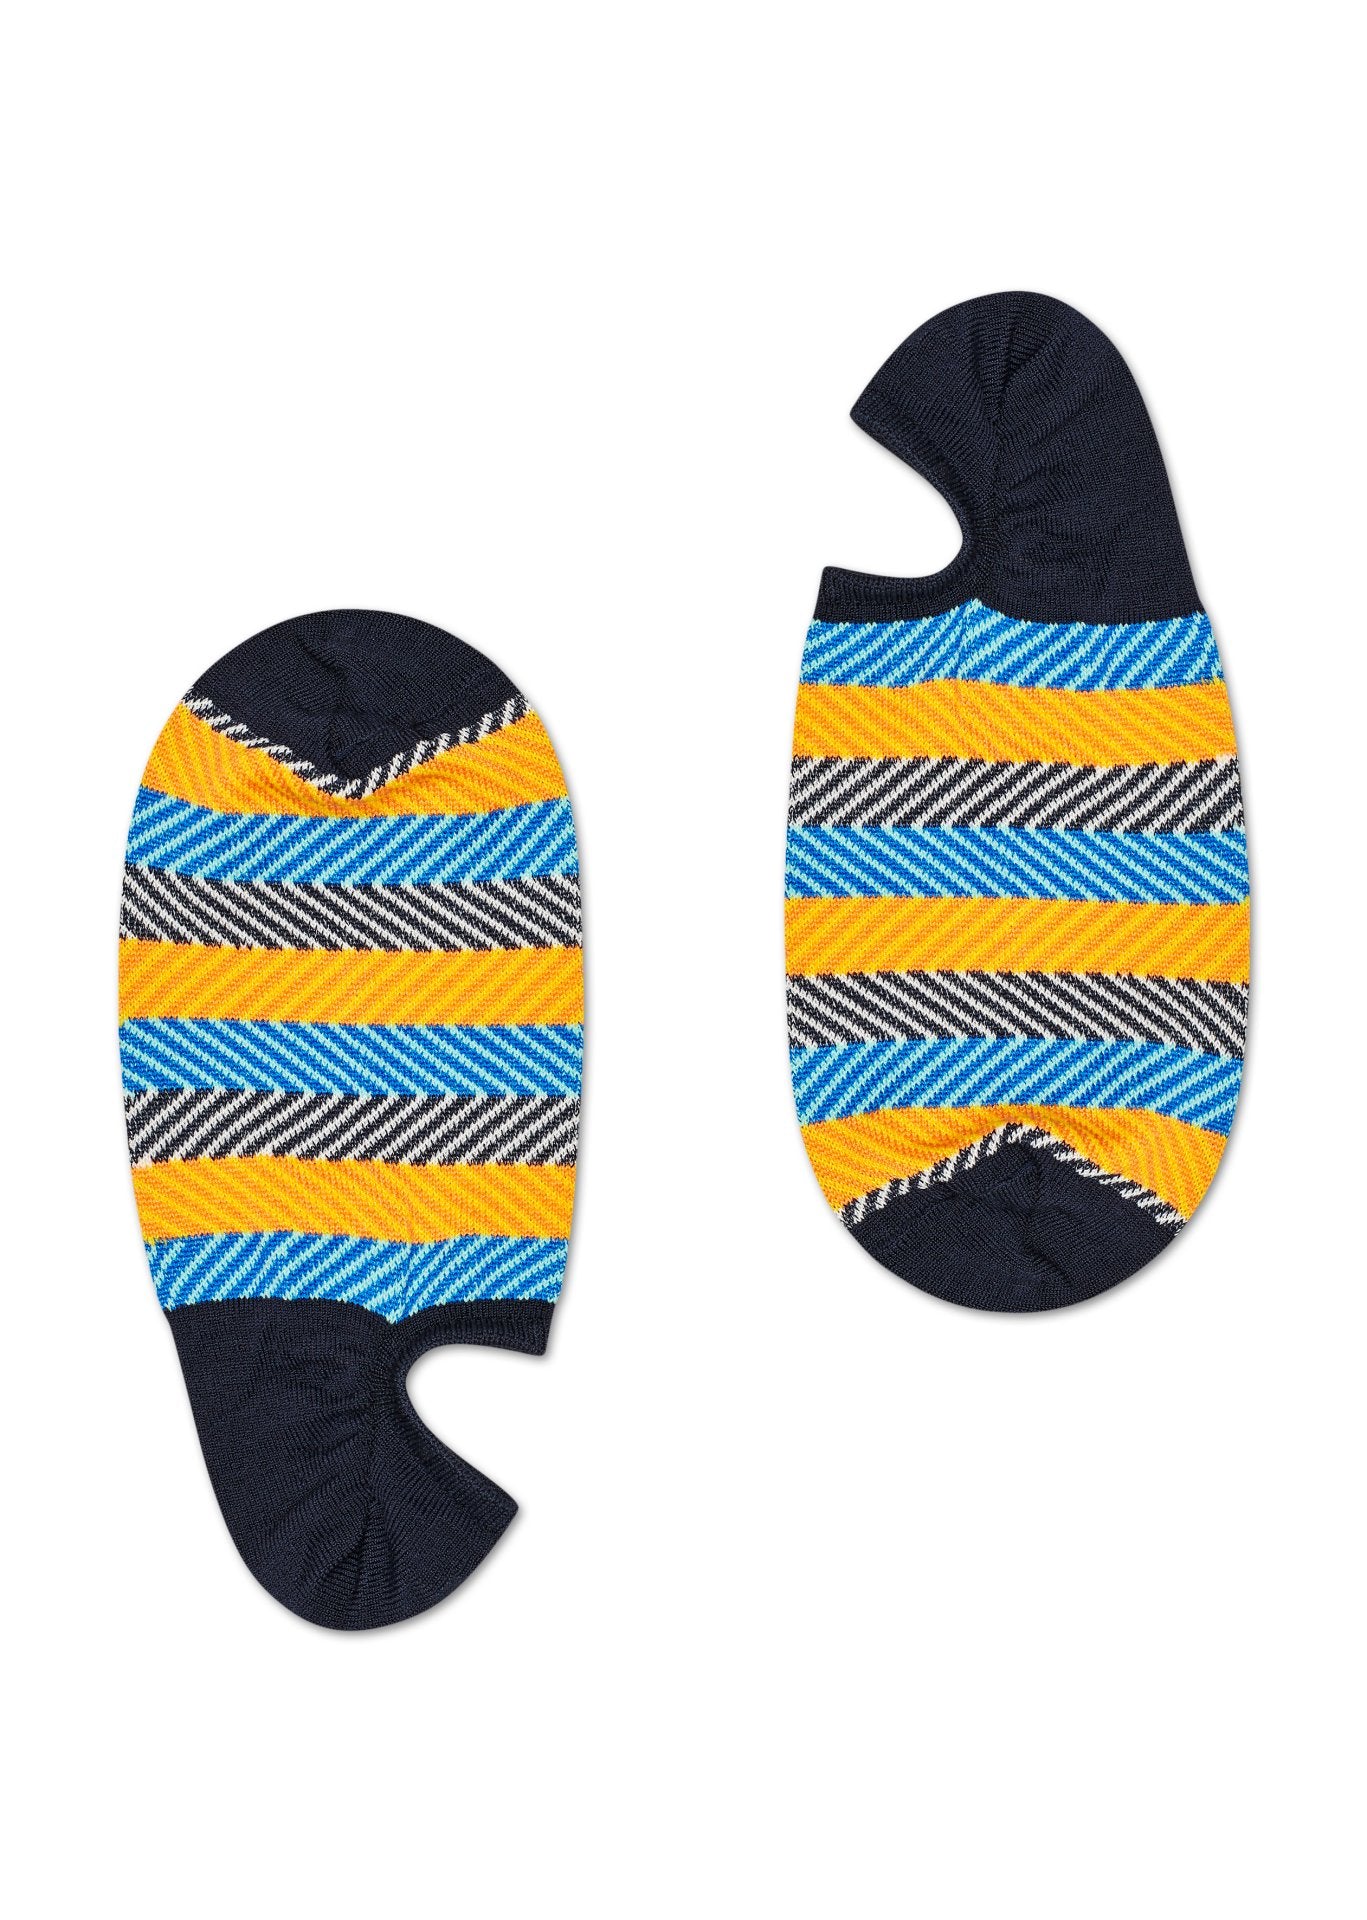 Modro-žluté nízké vykrojené ponožky Happy Socks, vzor Multi Stripe // KOLEKCE DRESSED